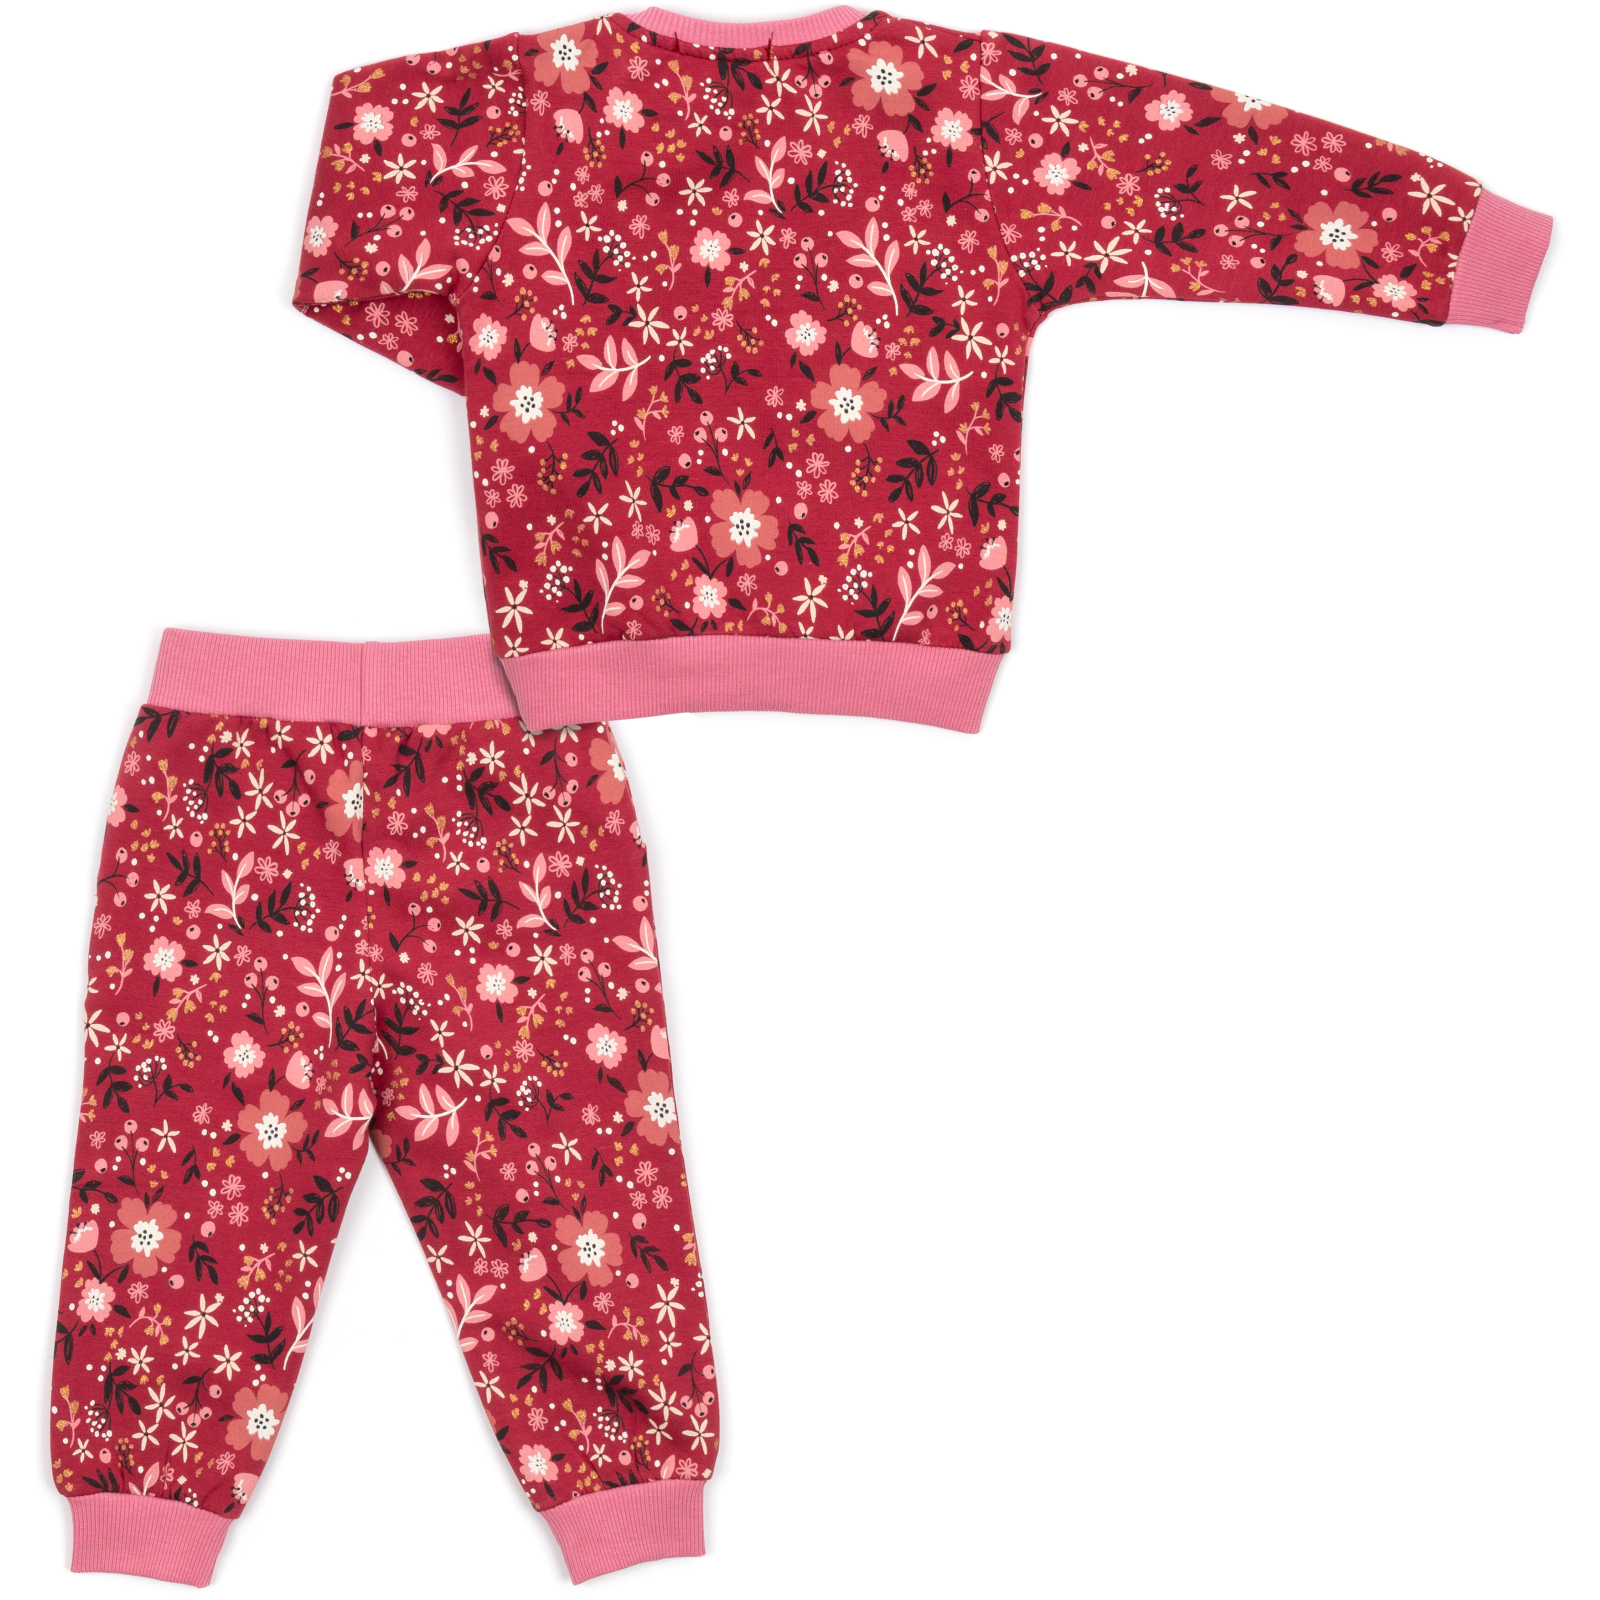 Набор детской одежды Breeze на флисе (17306-98G-red) изображение 4